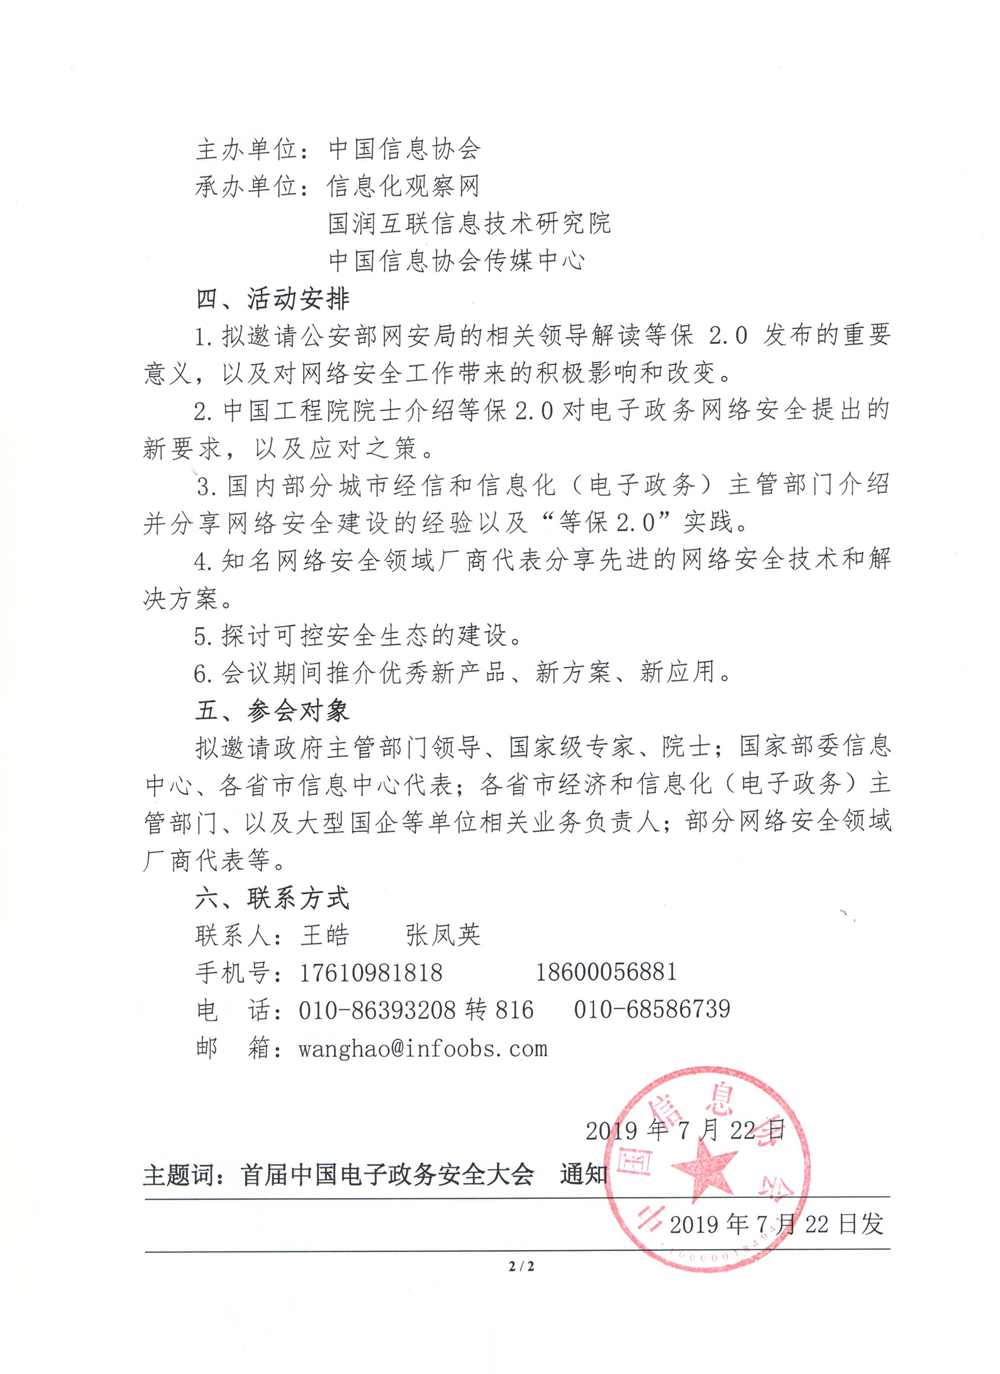 关于召开“首届中国电子政务安全大会”的通知